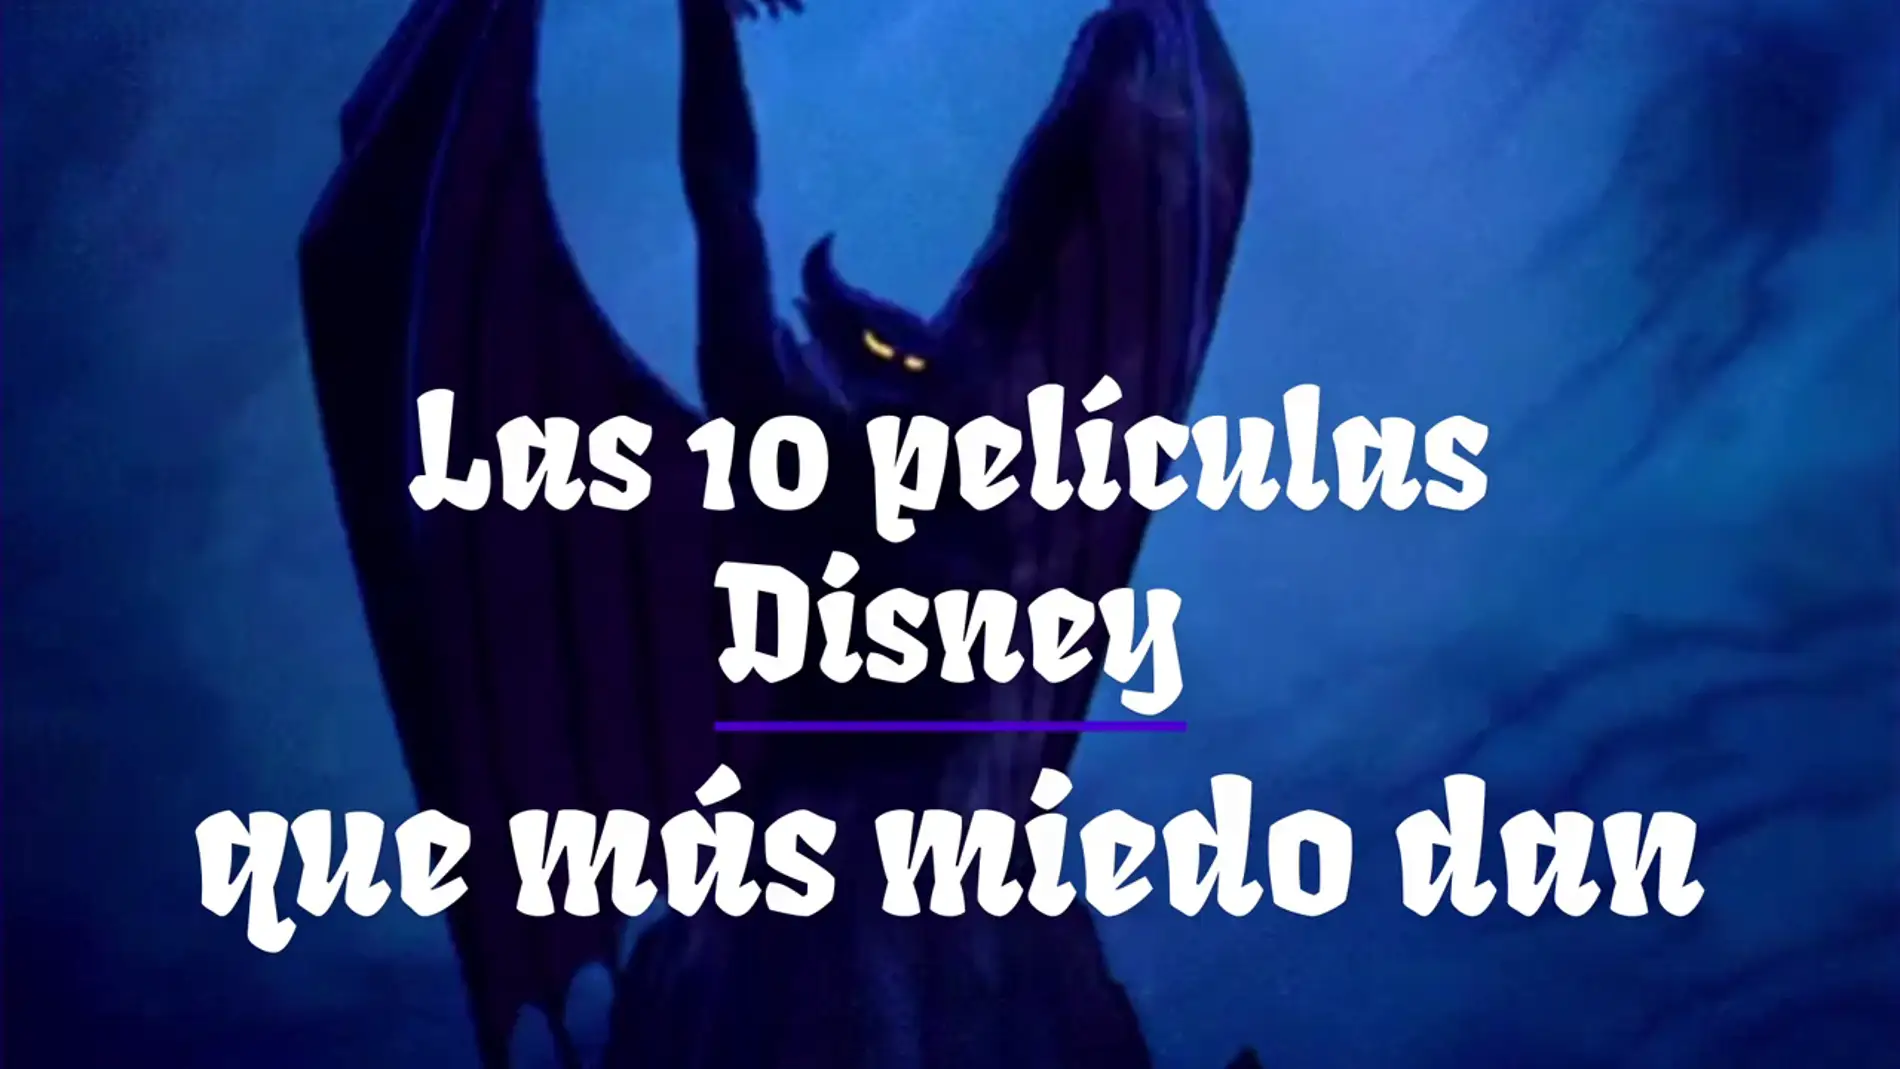 La parte más oscura de la fantasía: Las 10 películas de Disney que más miedo dan